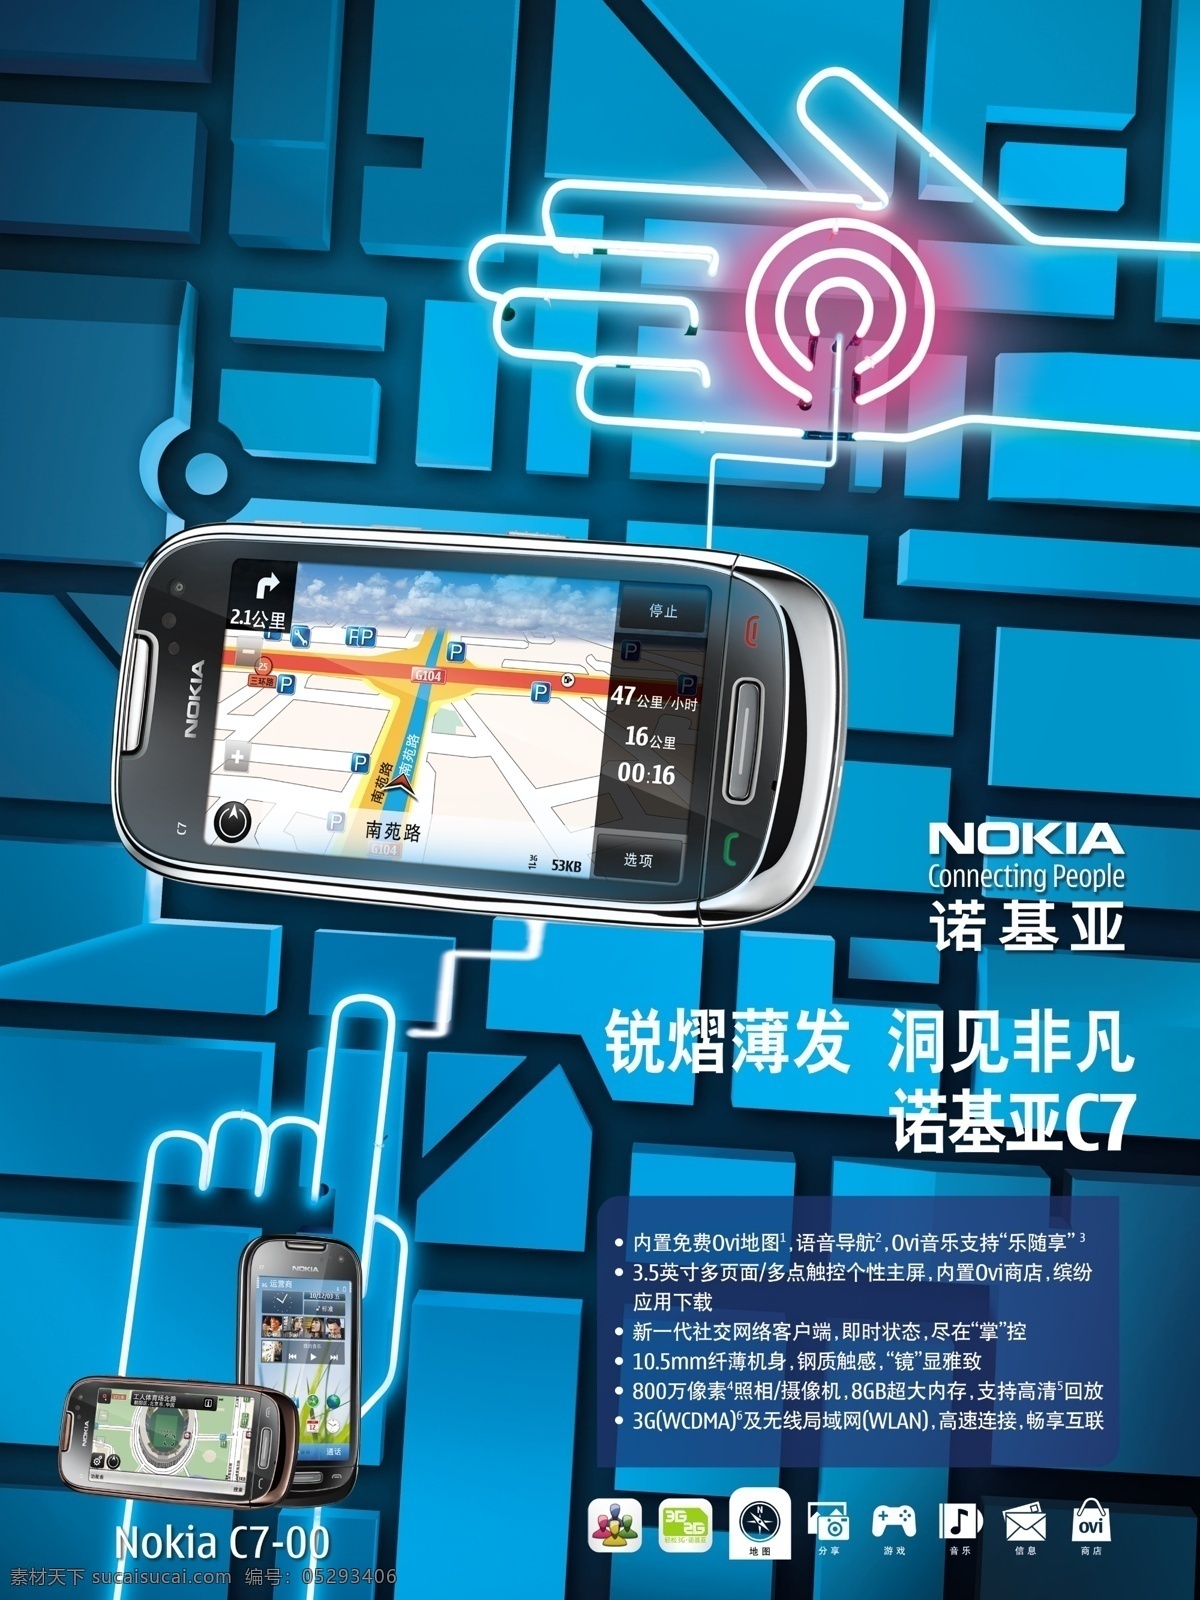 诺基亚 nokia 导航 广告设计模板 蓝色 路线 c7 手机 源文件 网页素材 导航菜单